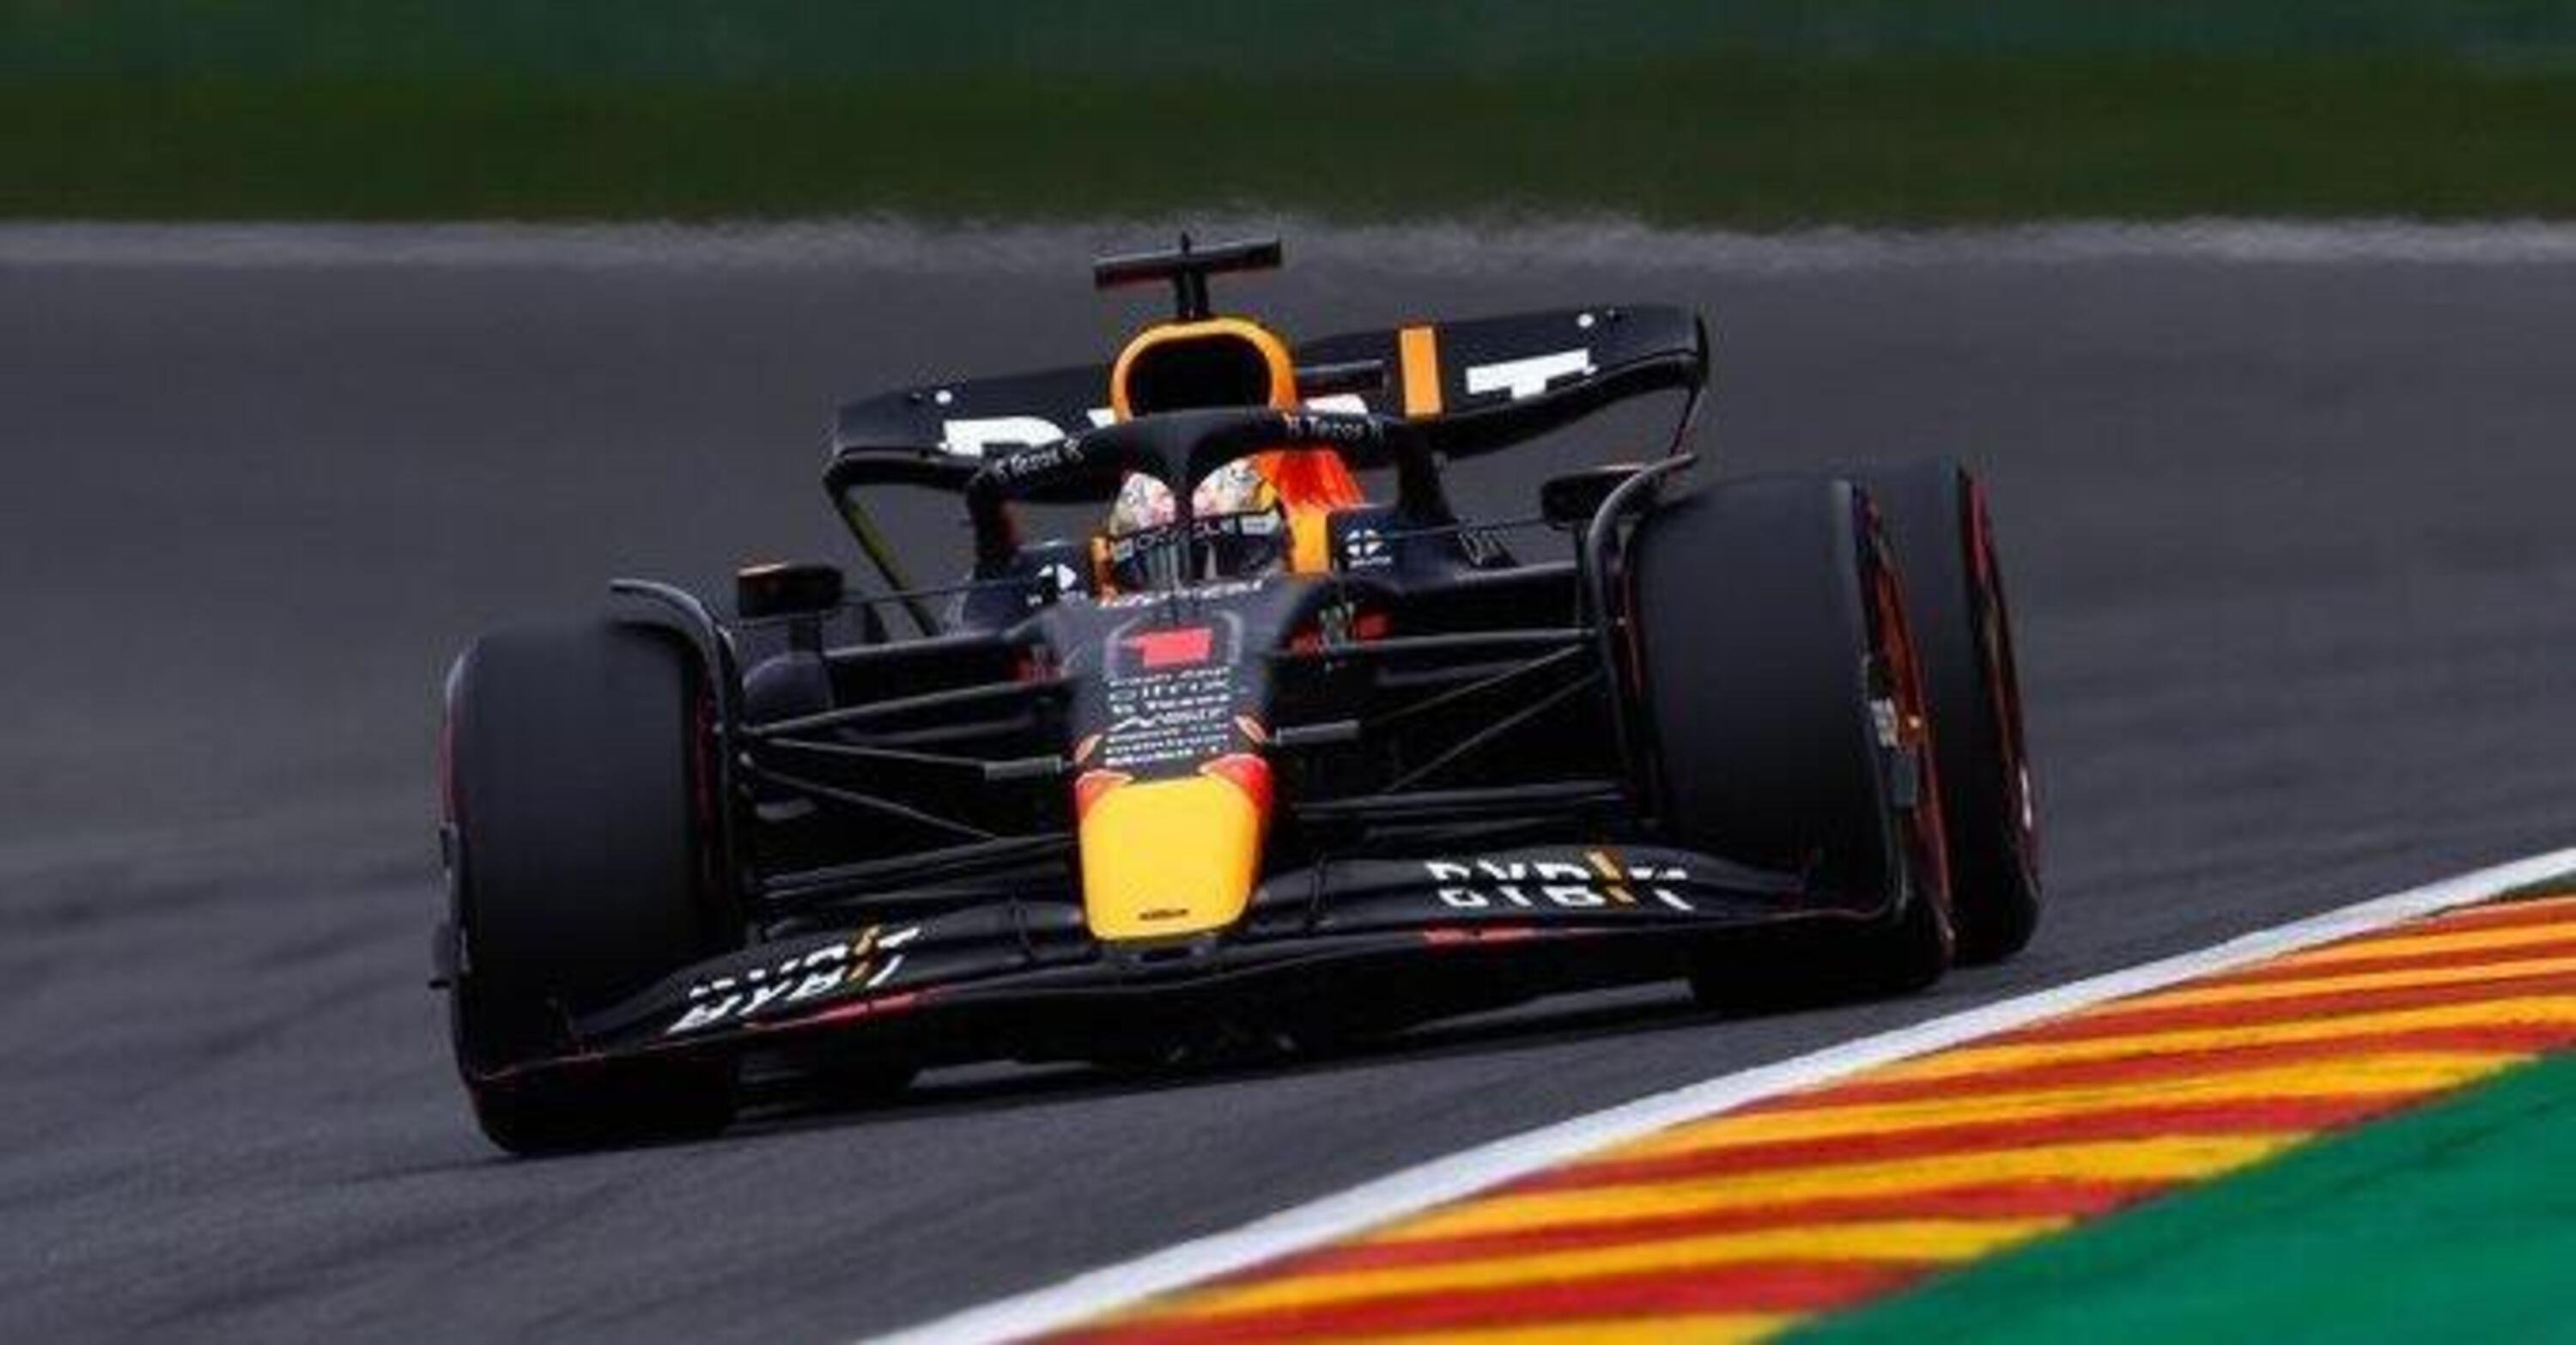 F1, GP Belgio 2022: Verstappen domina, Ferrari non manda nuovamente in temperatura le gomme